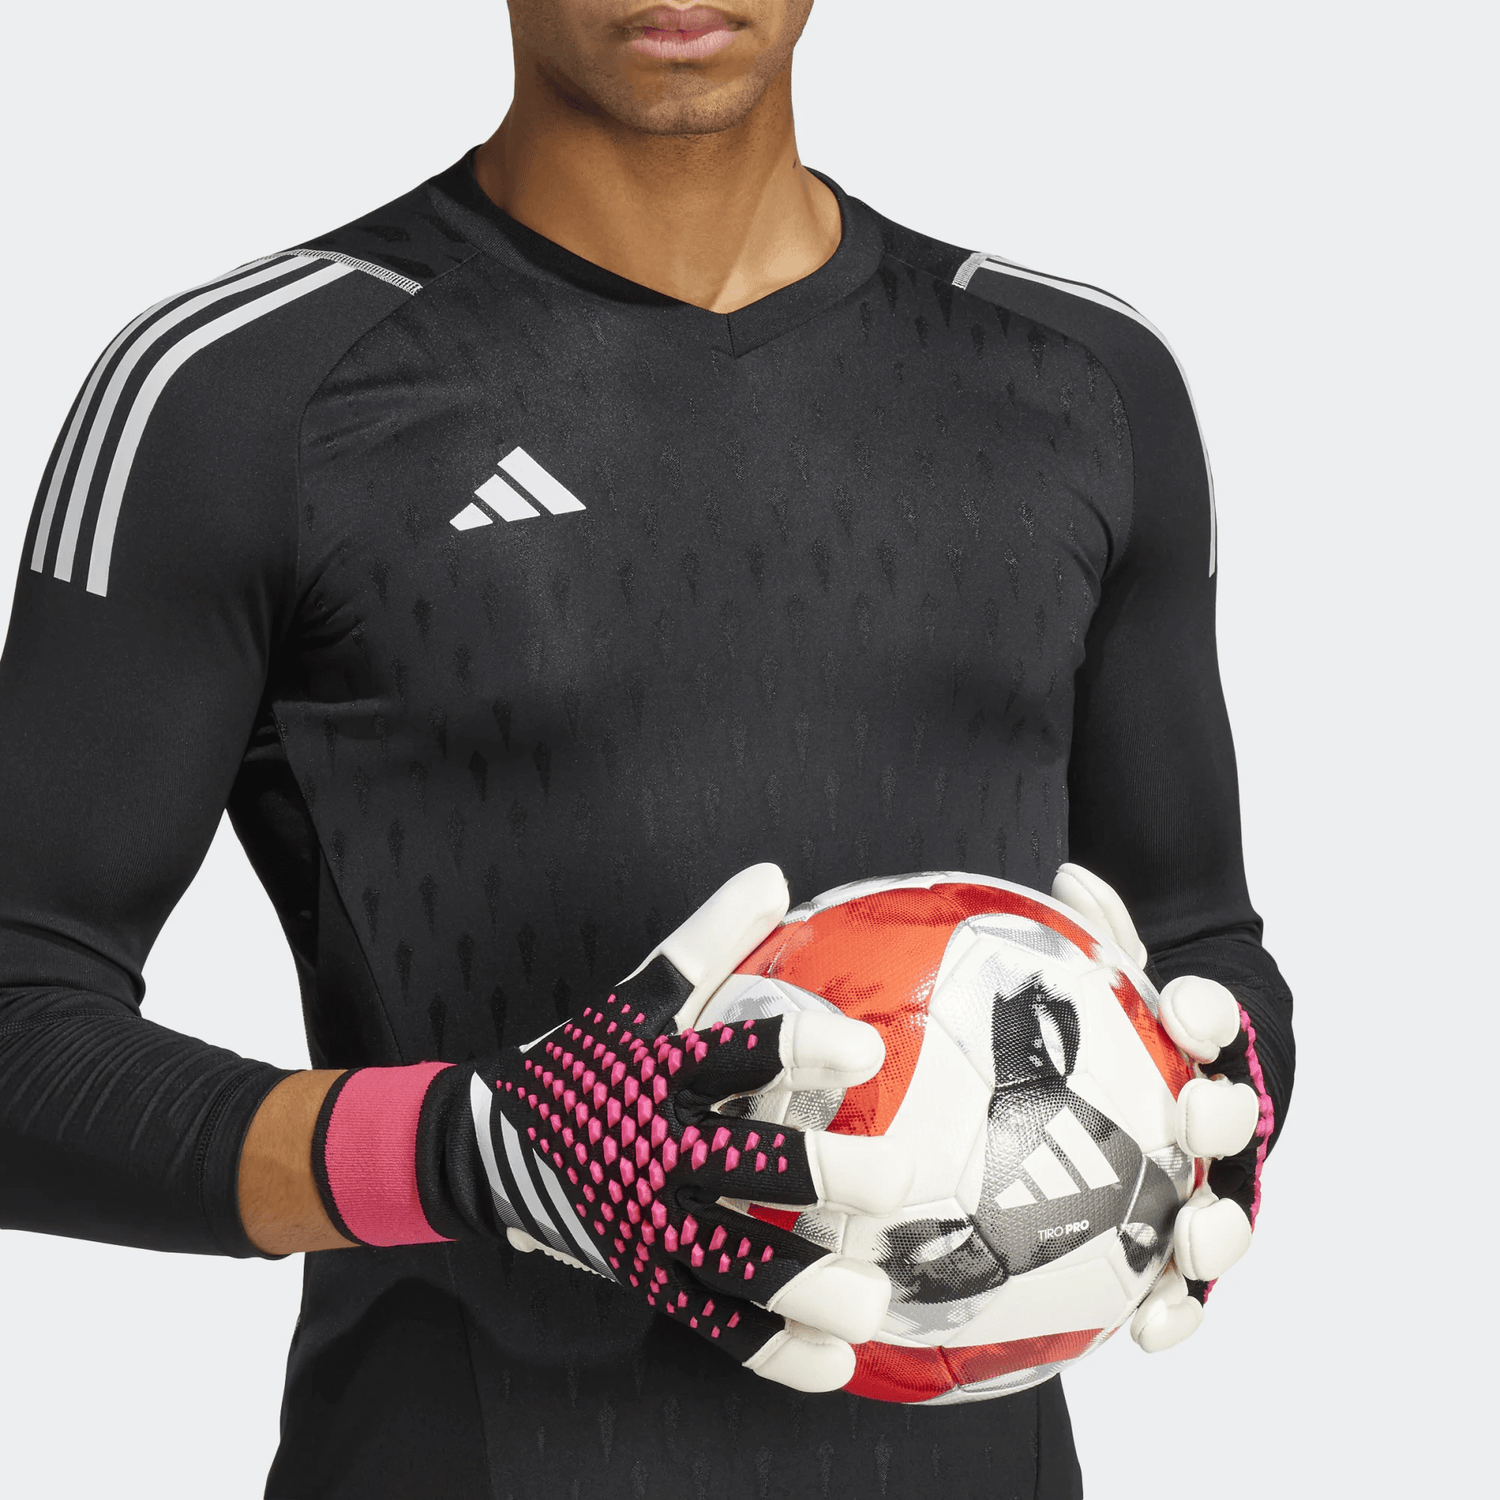 adidas Predator GL Pro Hybrid Goalkeeper Gloves - Black-Pink-White (Model 1)